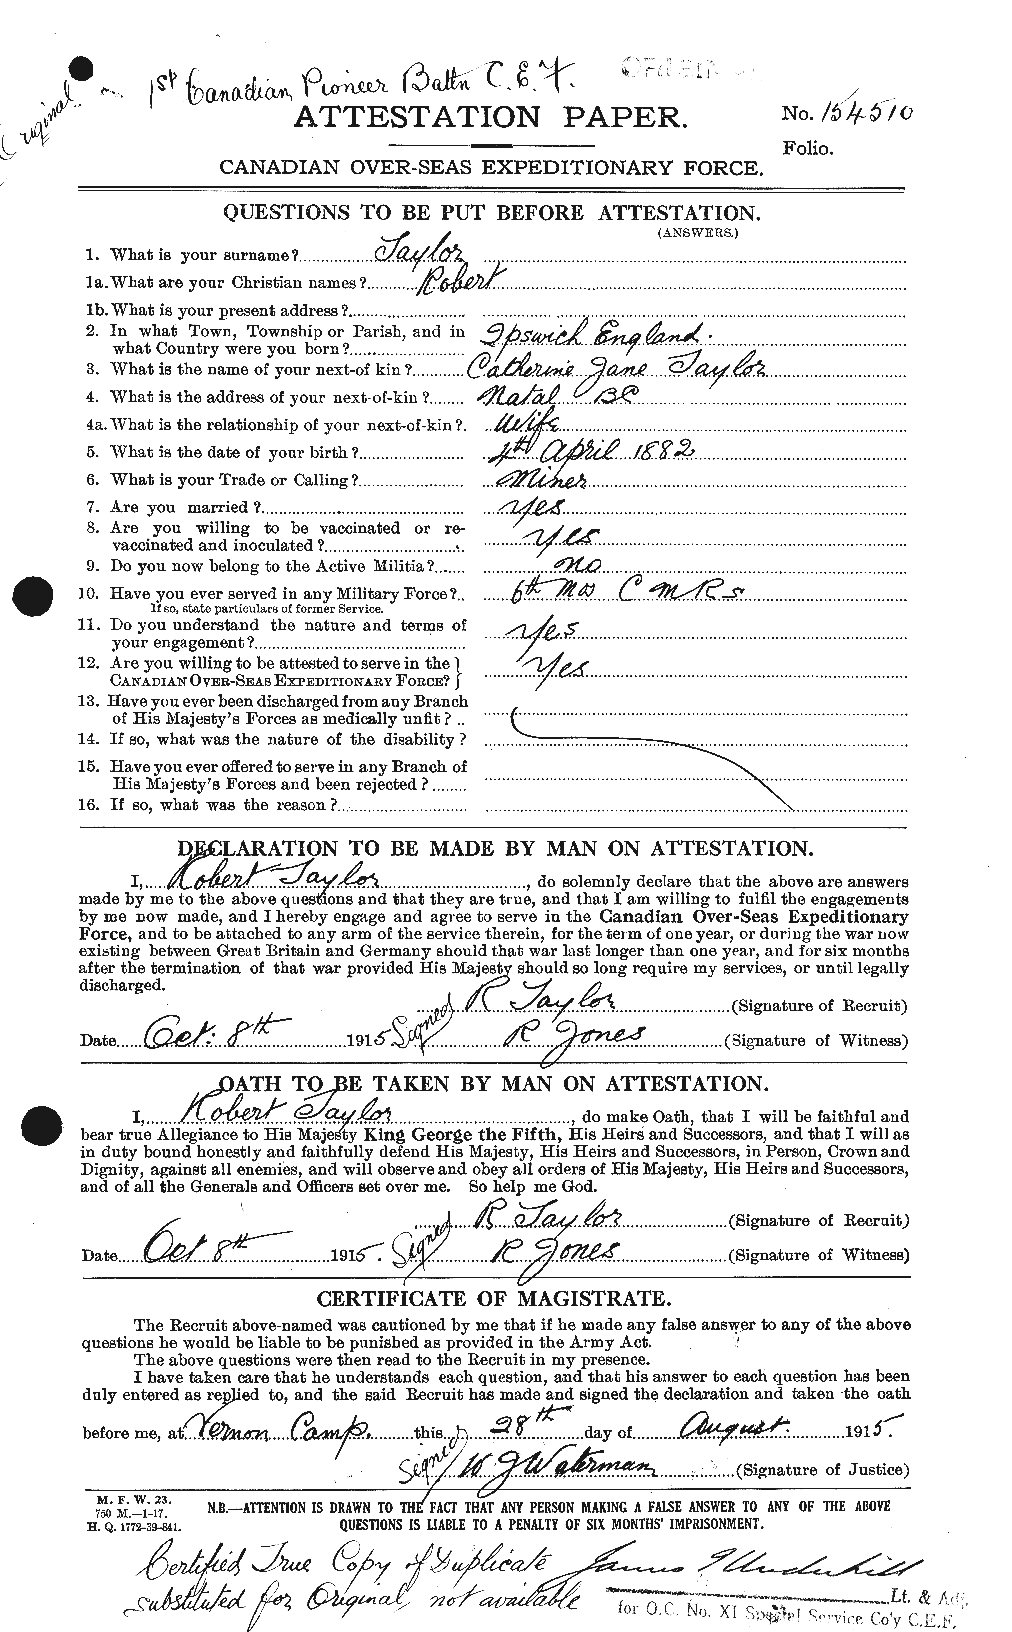 Dossiers du Personnel de la Première Guerre mondiale - CEC 627446a